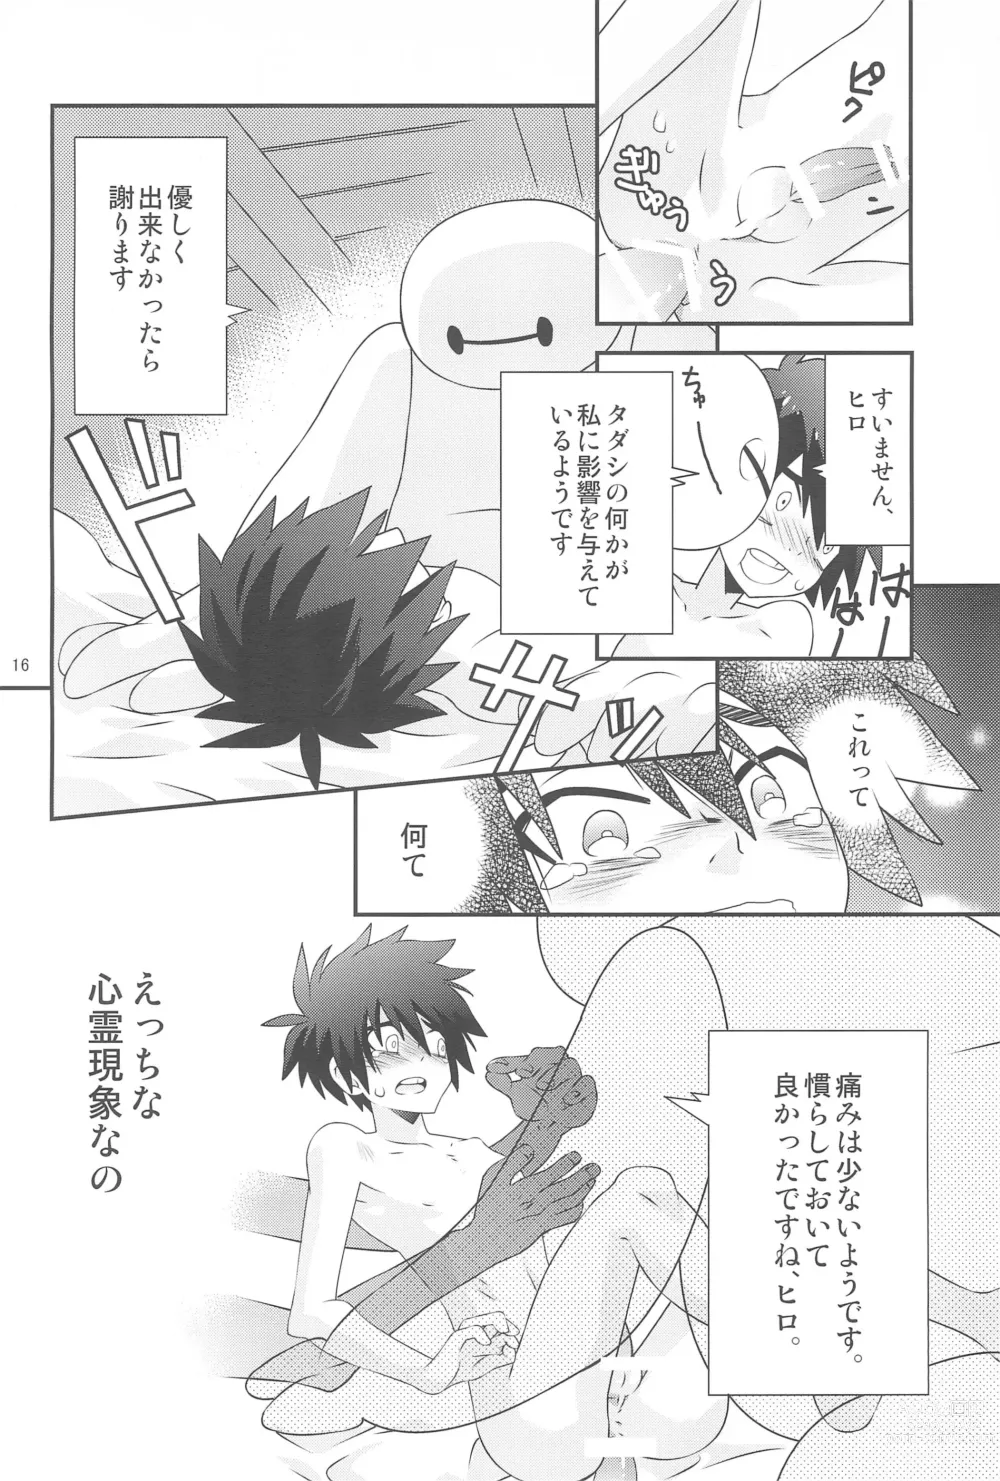 Page 16 of doujinshi Hiro-kun no Hajimete.